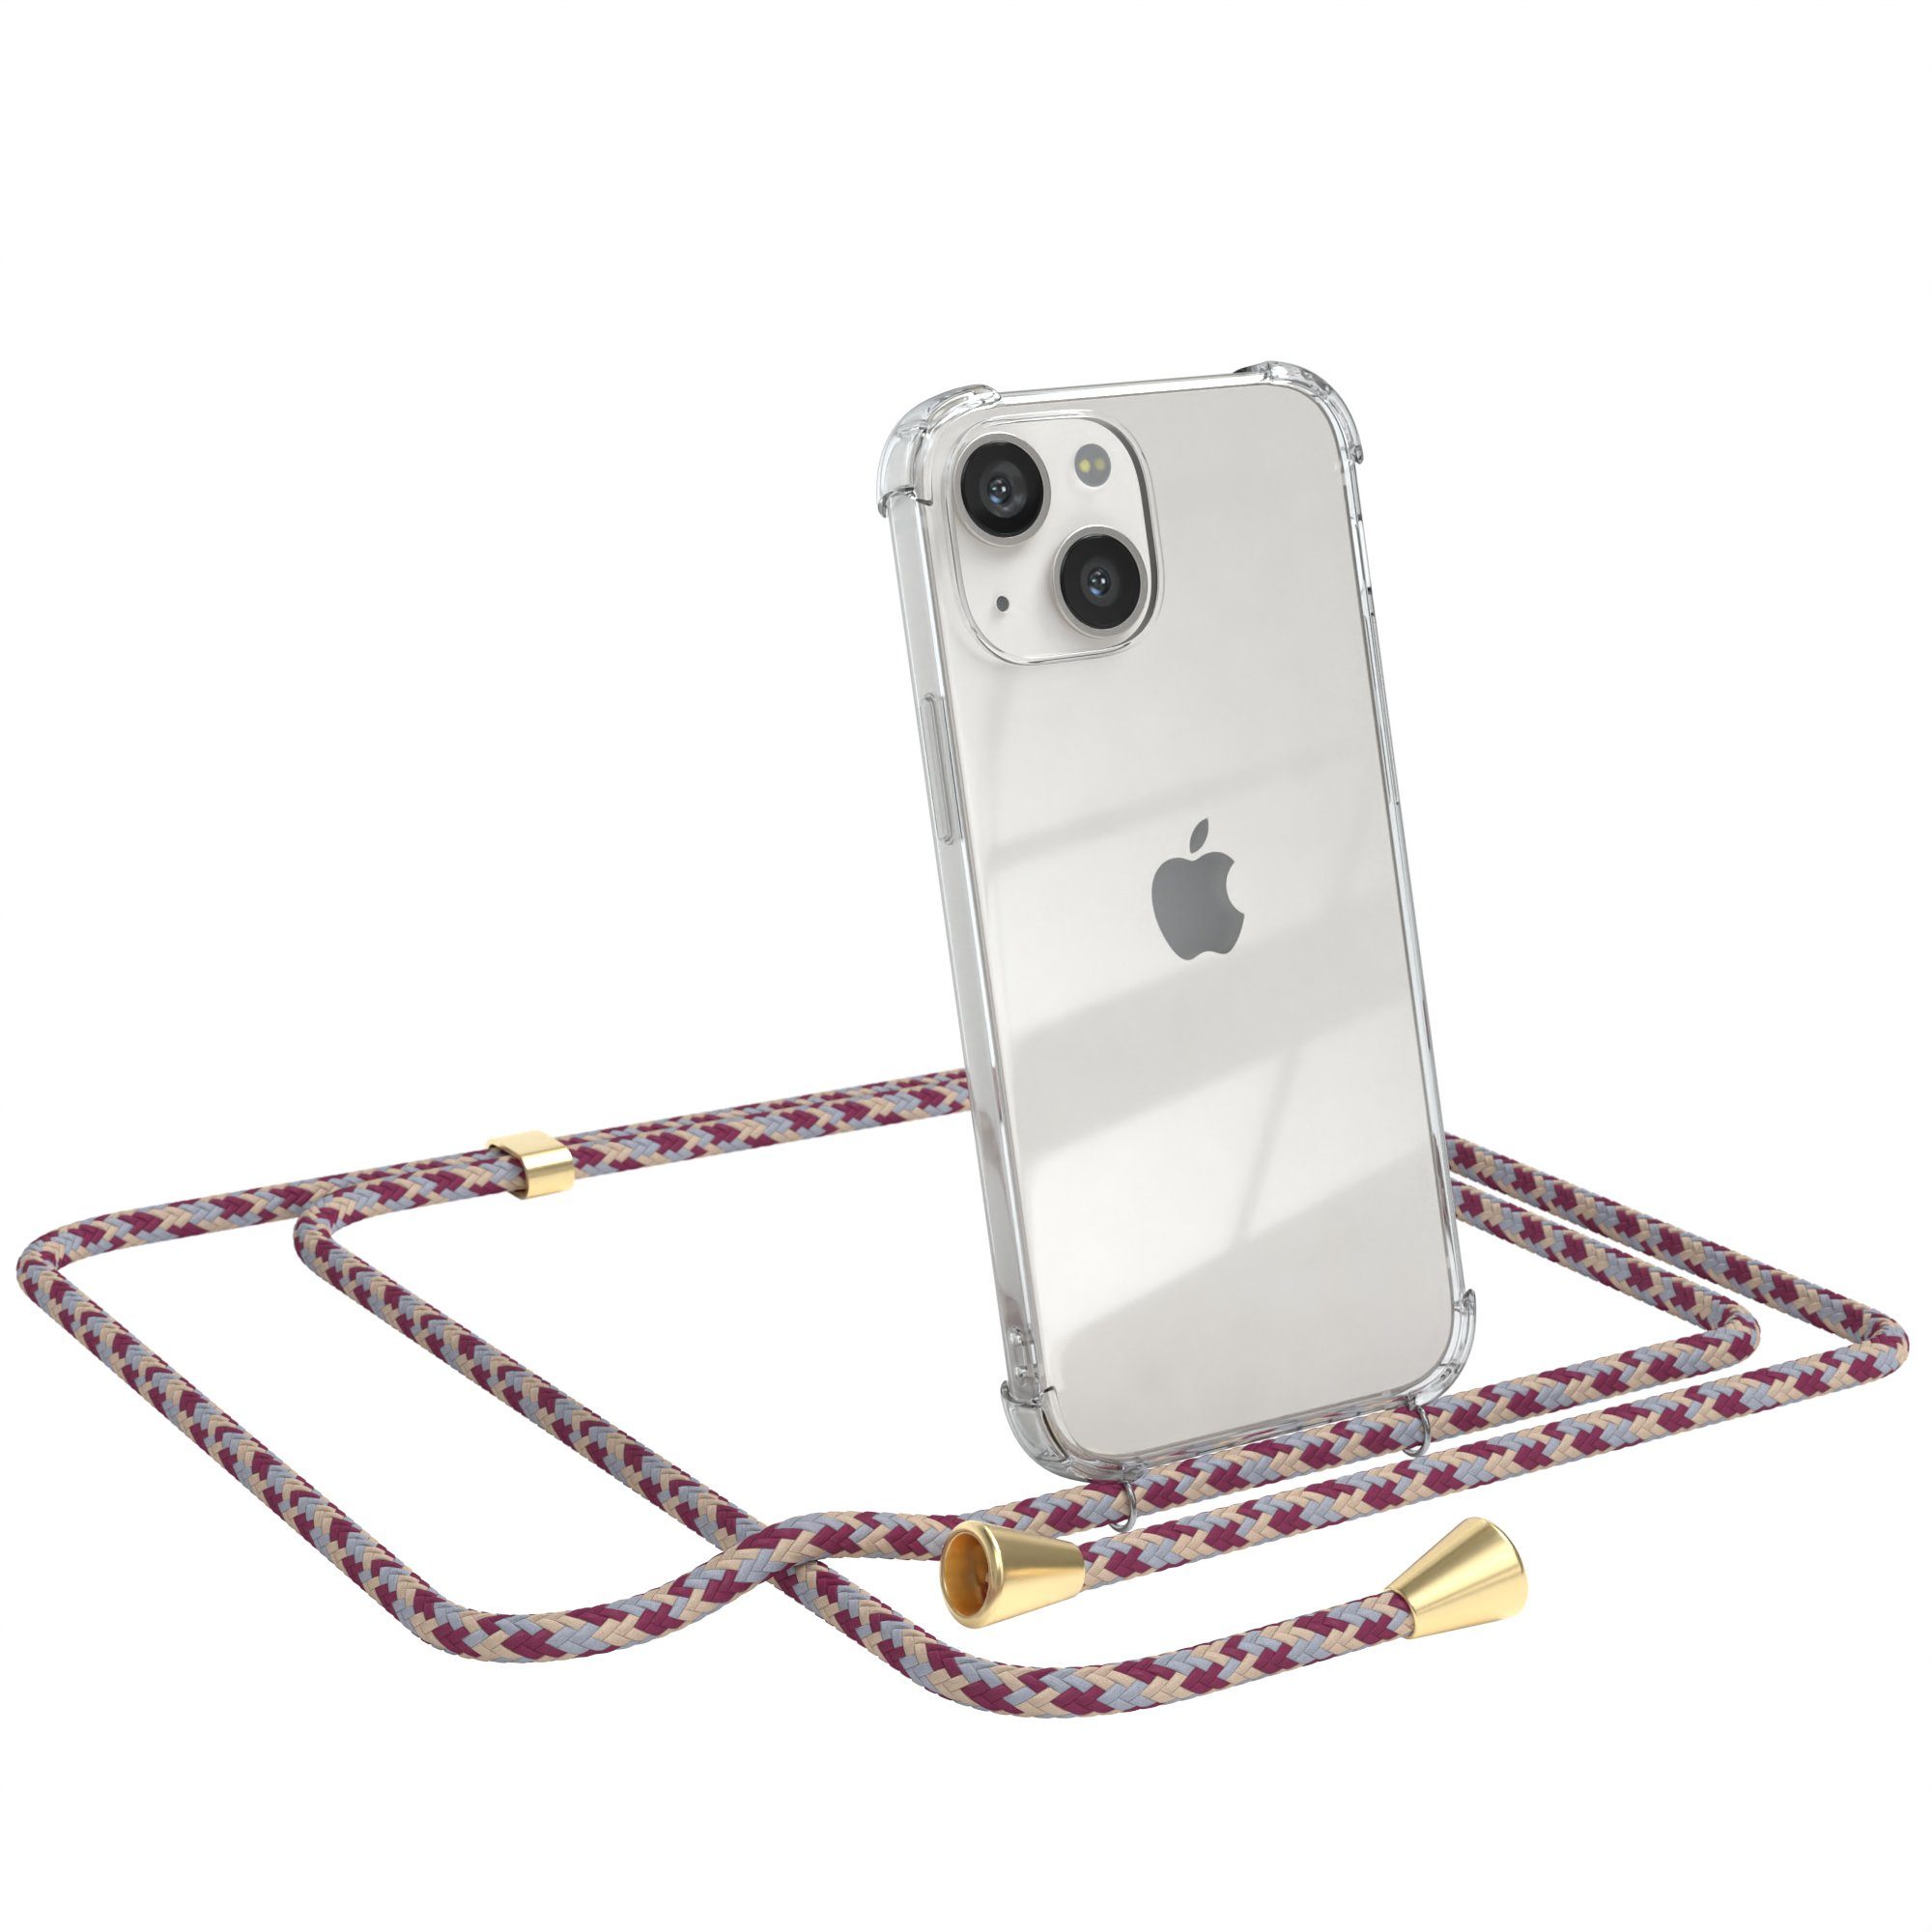 EAZY CASE Handykette Hülle mit Kette für Apple iPhone 13 Mini 5,4 Zoll, Hülle mit Umhängeband Bumper Case Hülle mit Band Rot Beige Camouflage